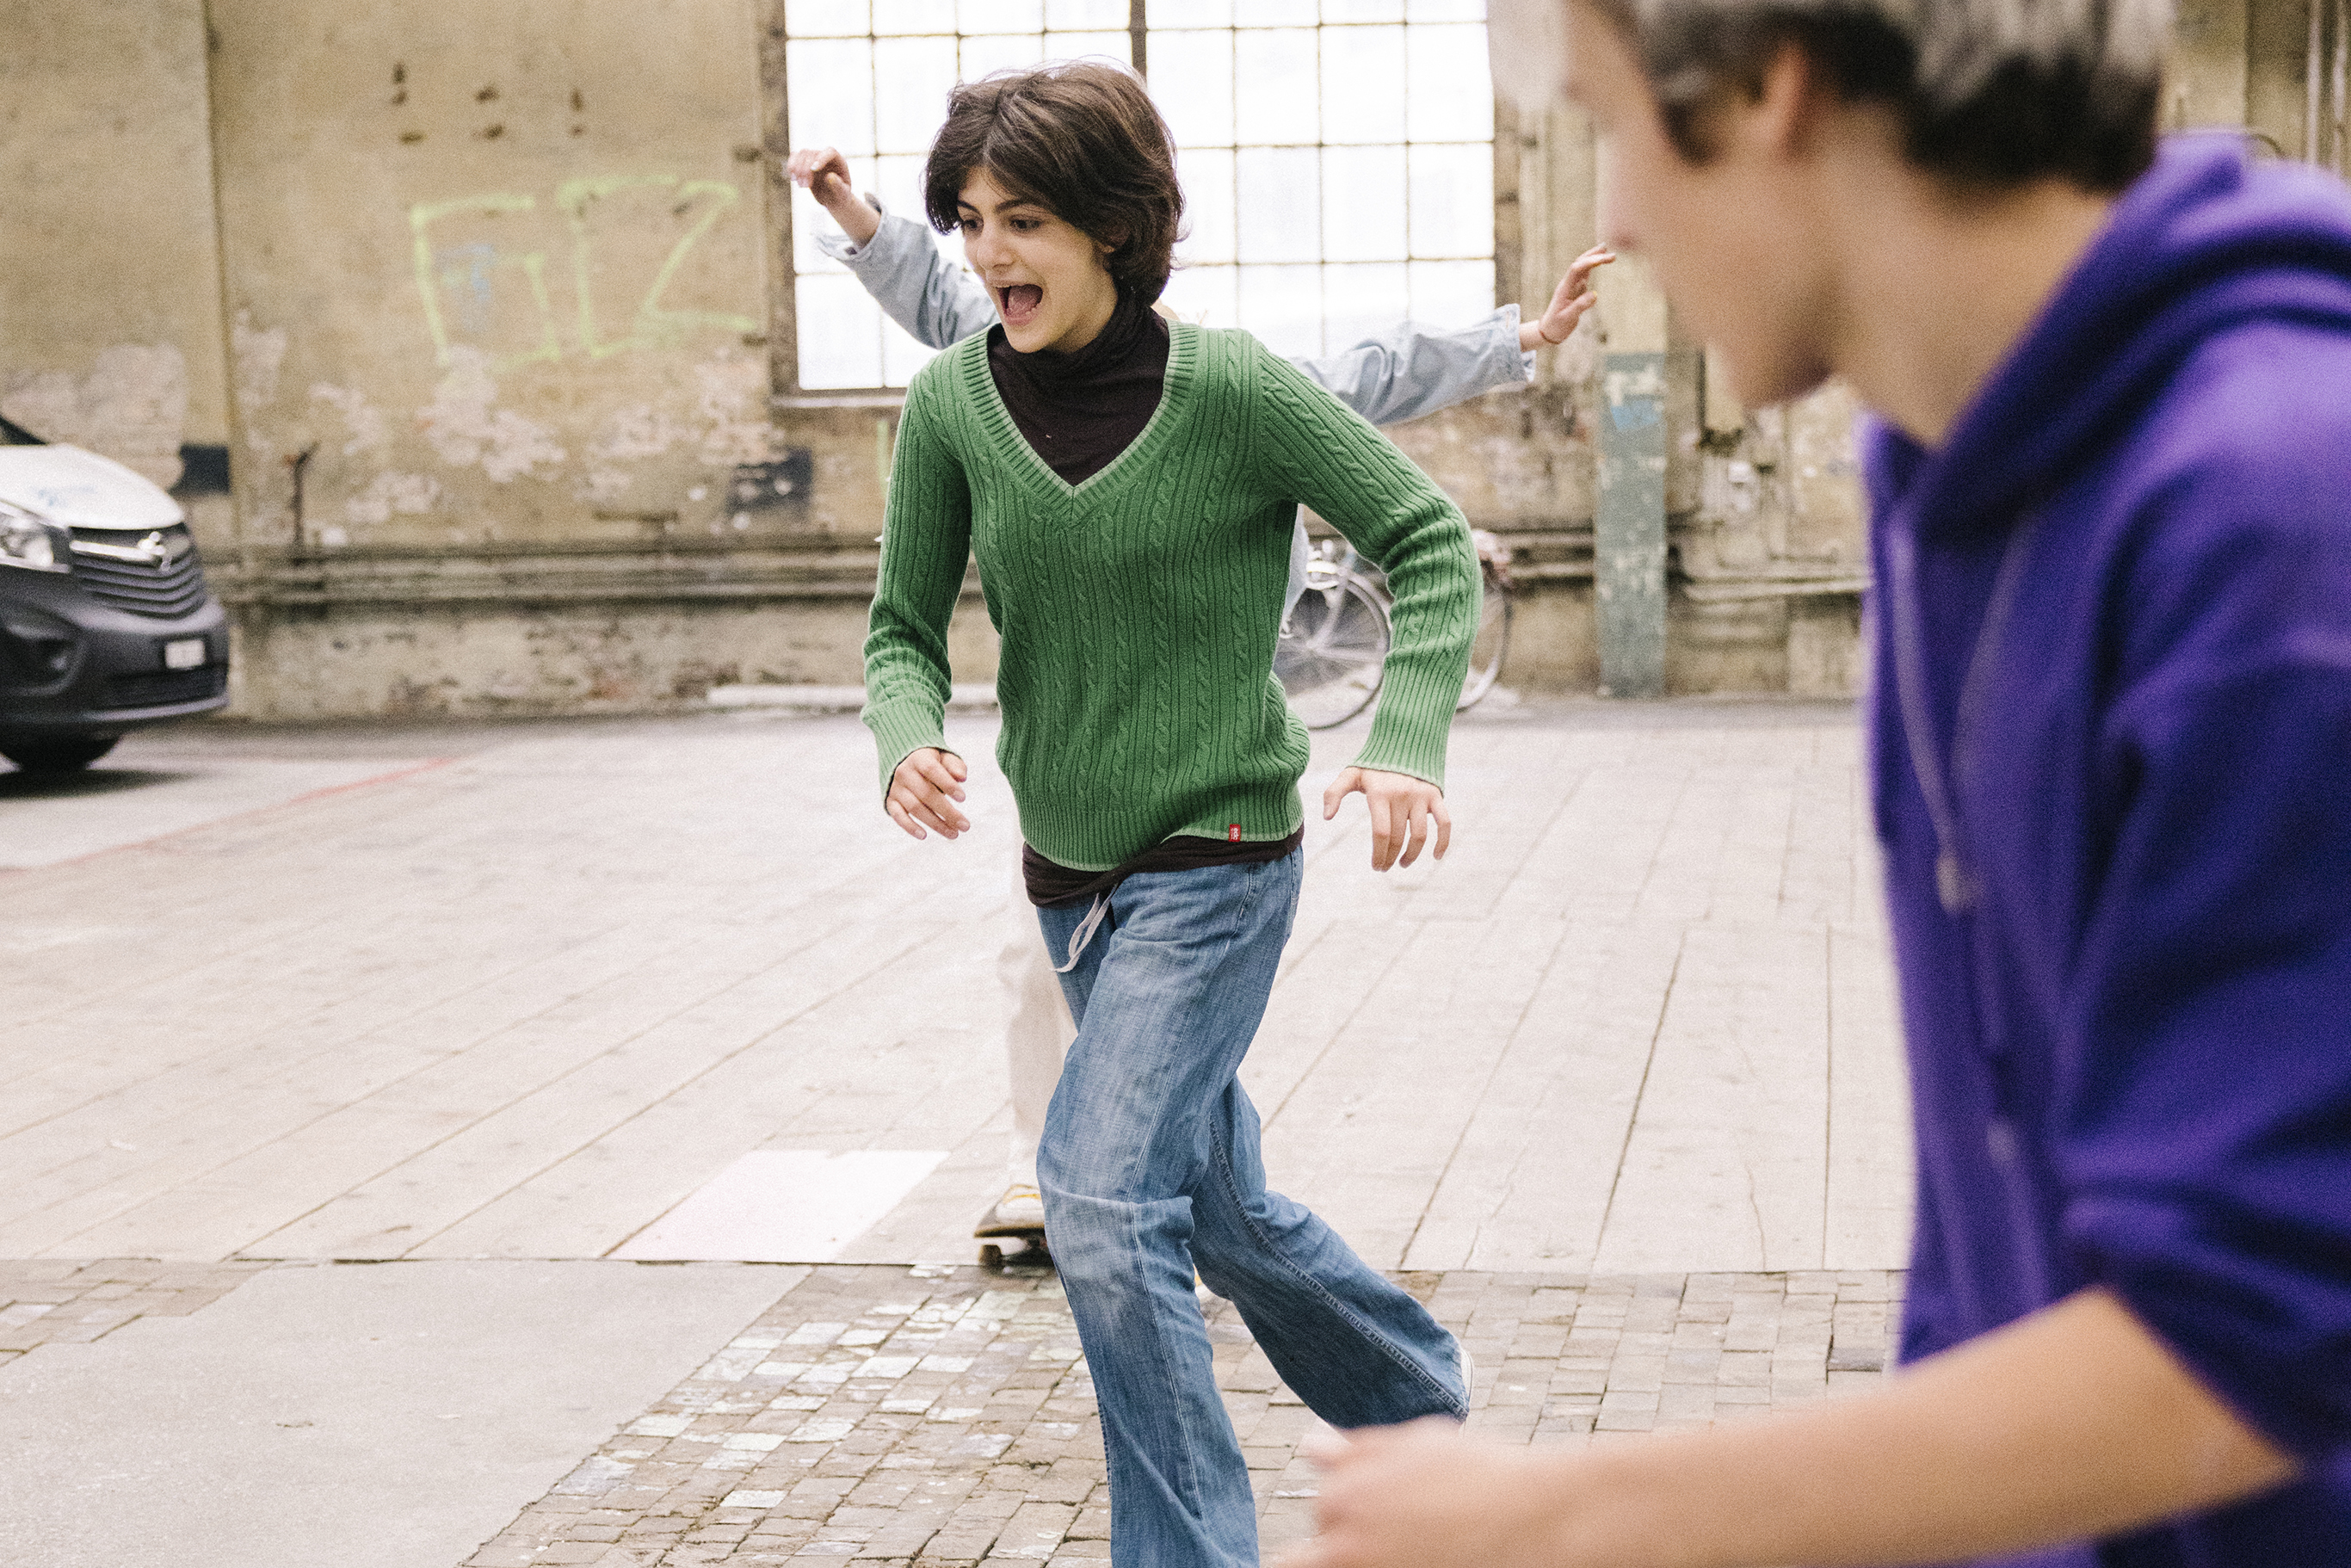 Une adolescente court en riant vers son skateboard posé par terre.